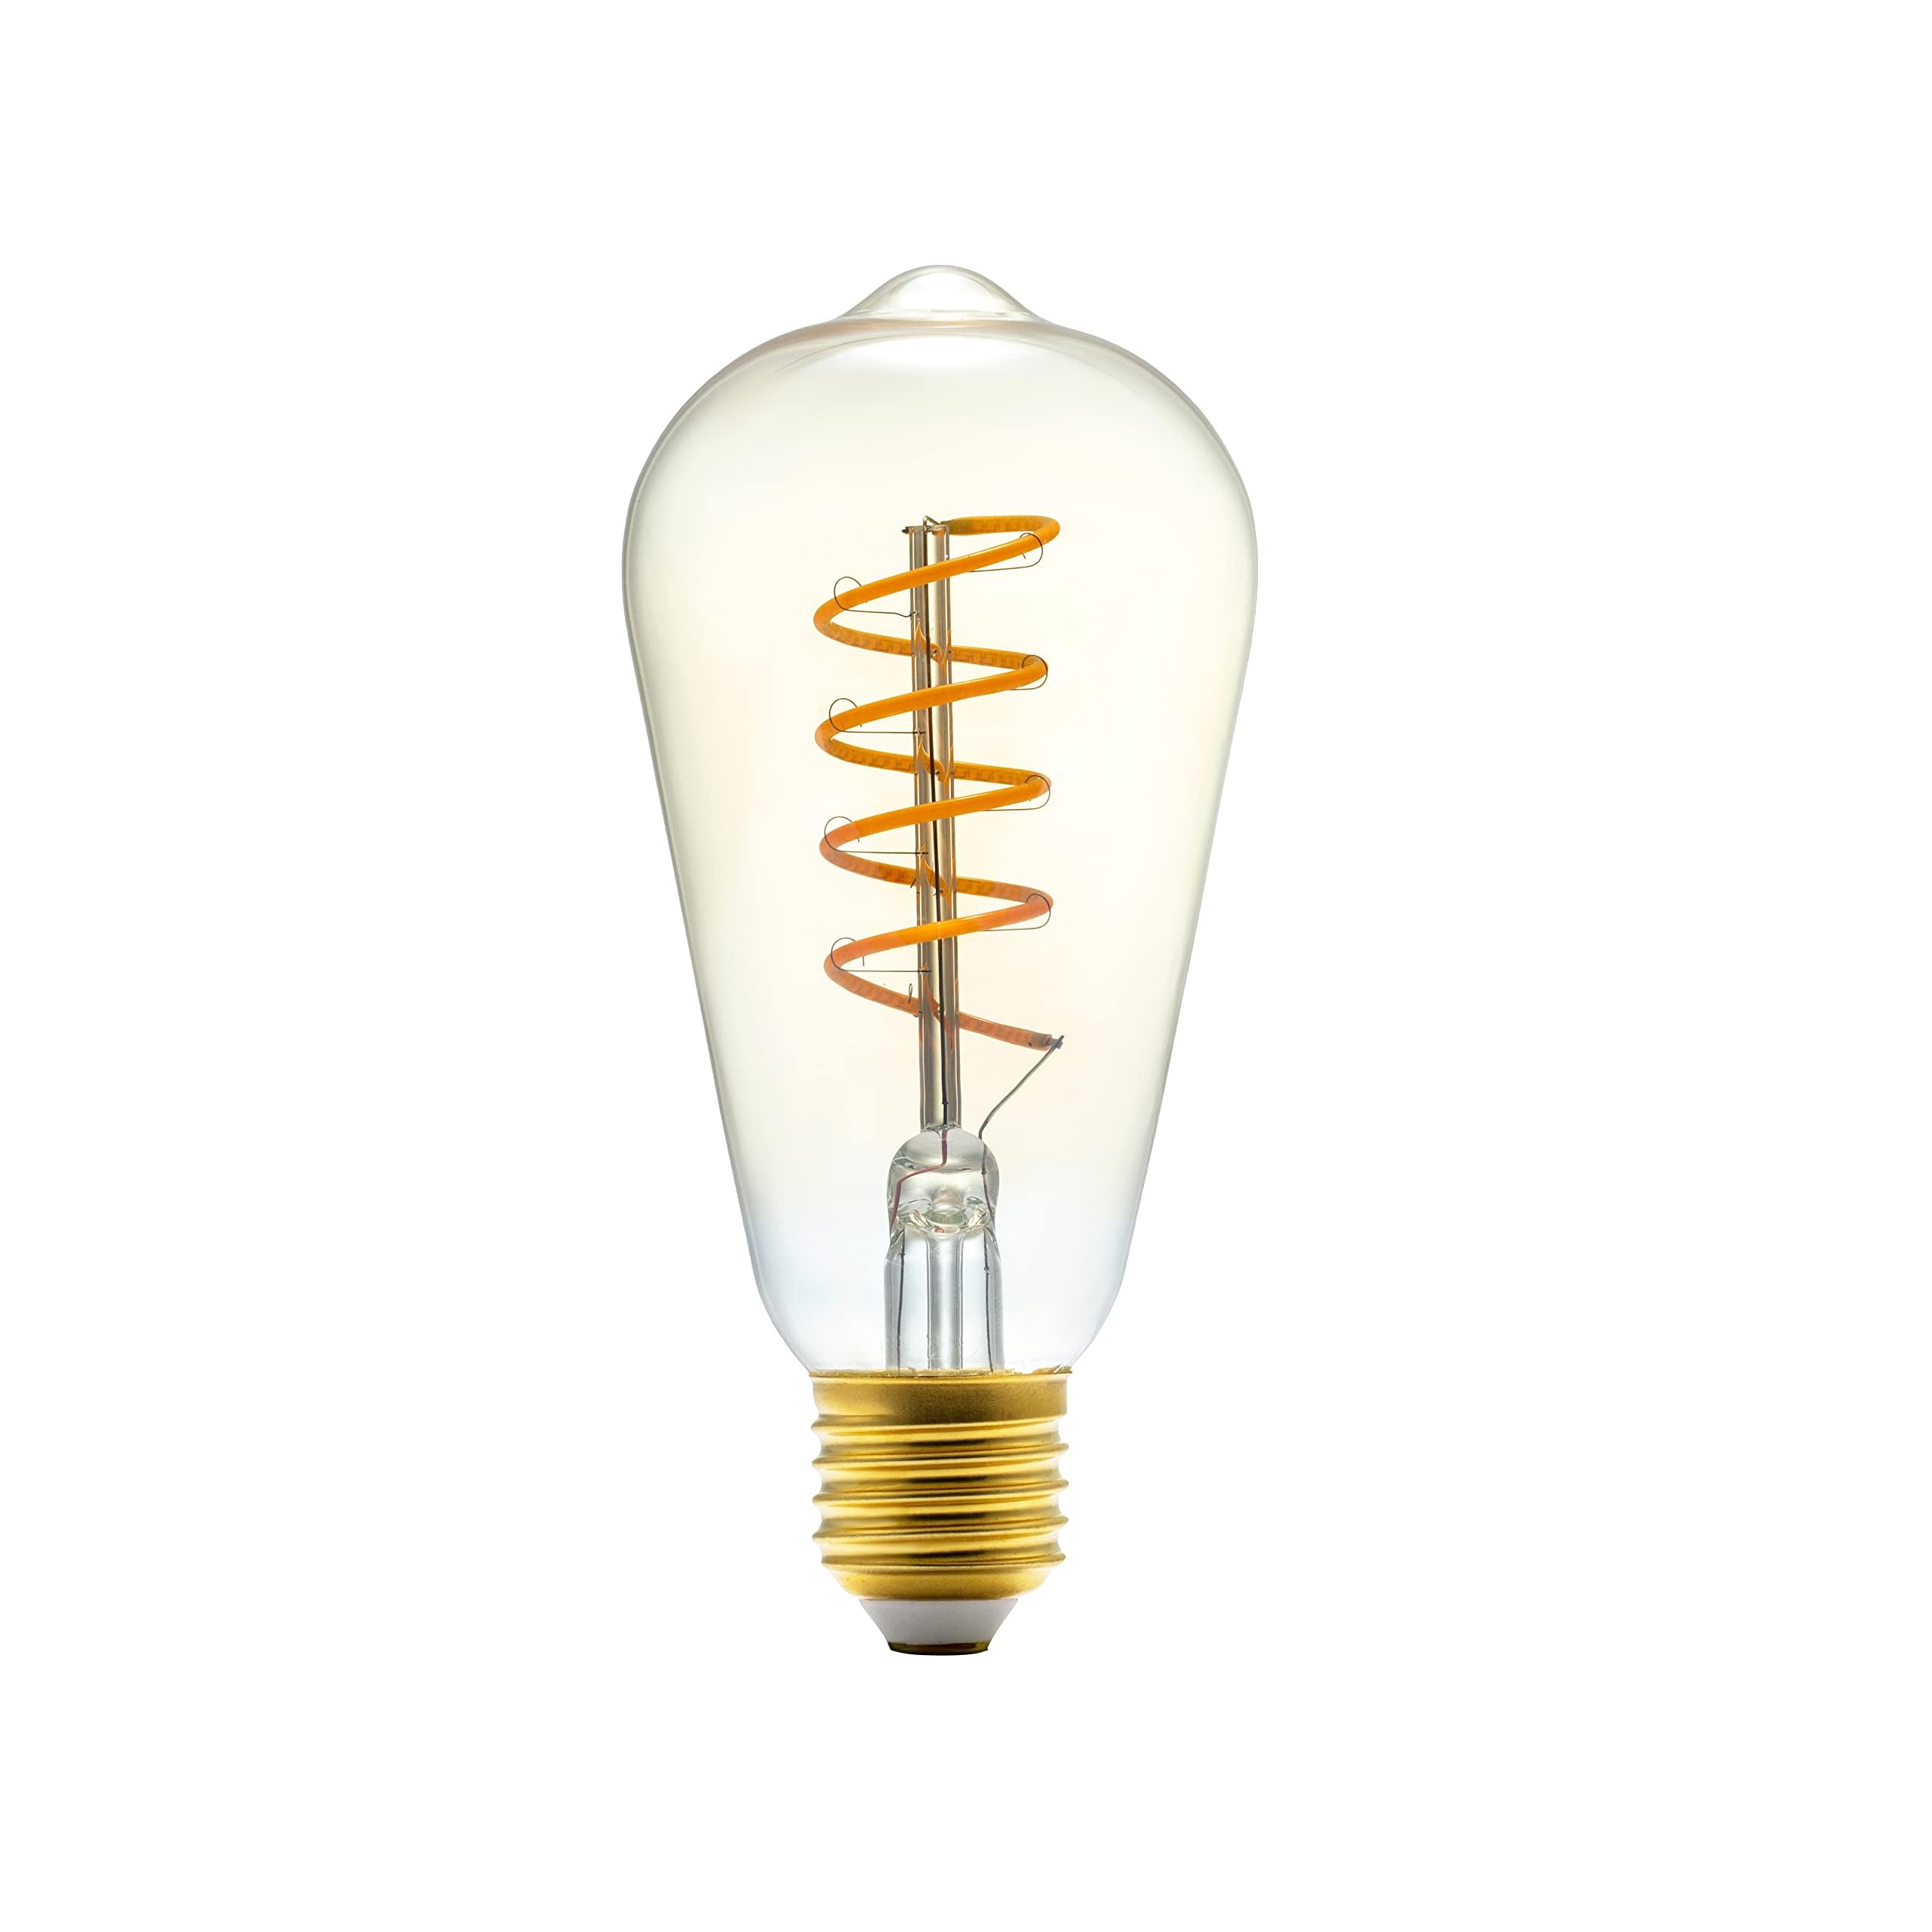 pas cher Amazon Basics Ampoule LED vintage E27, ST64, 4 W (équivalent à 25 W), Or, 6 unités, lot de 1, Blanc chaud rljdHOTe2 Vente chaude